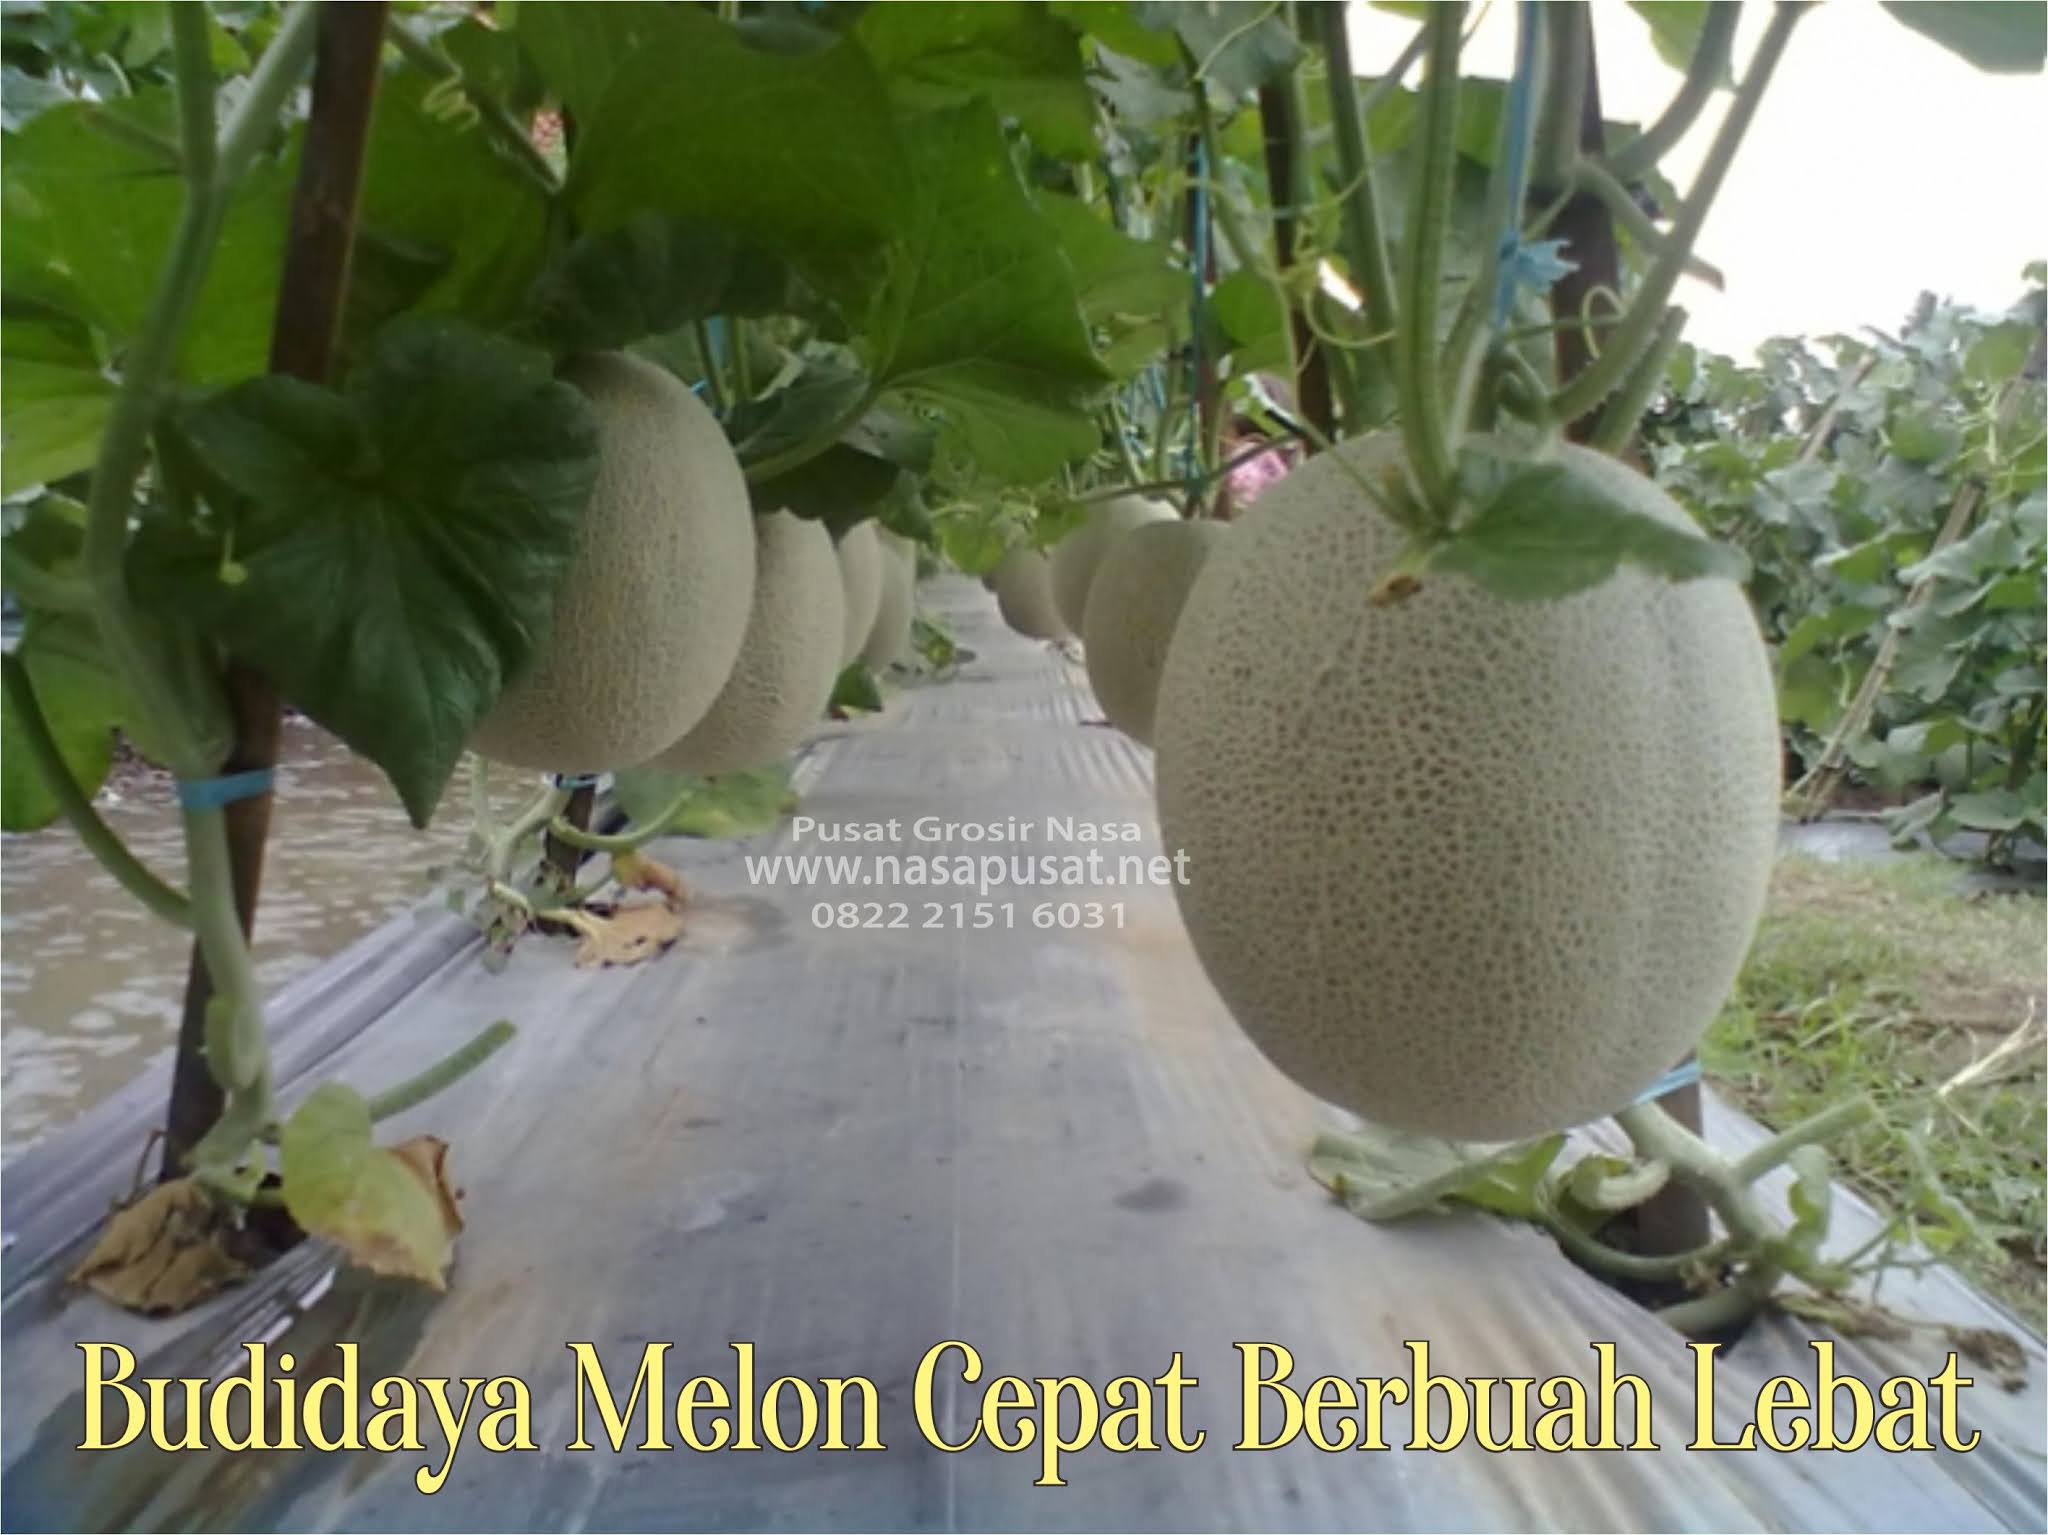 Cara Menanam Melon Agar Berbuah Besar Dan Berbuah 3 Nasa Pusat Grosir Produk Nasa